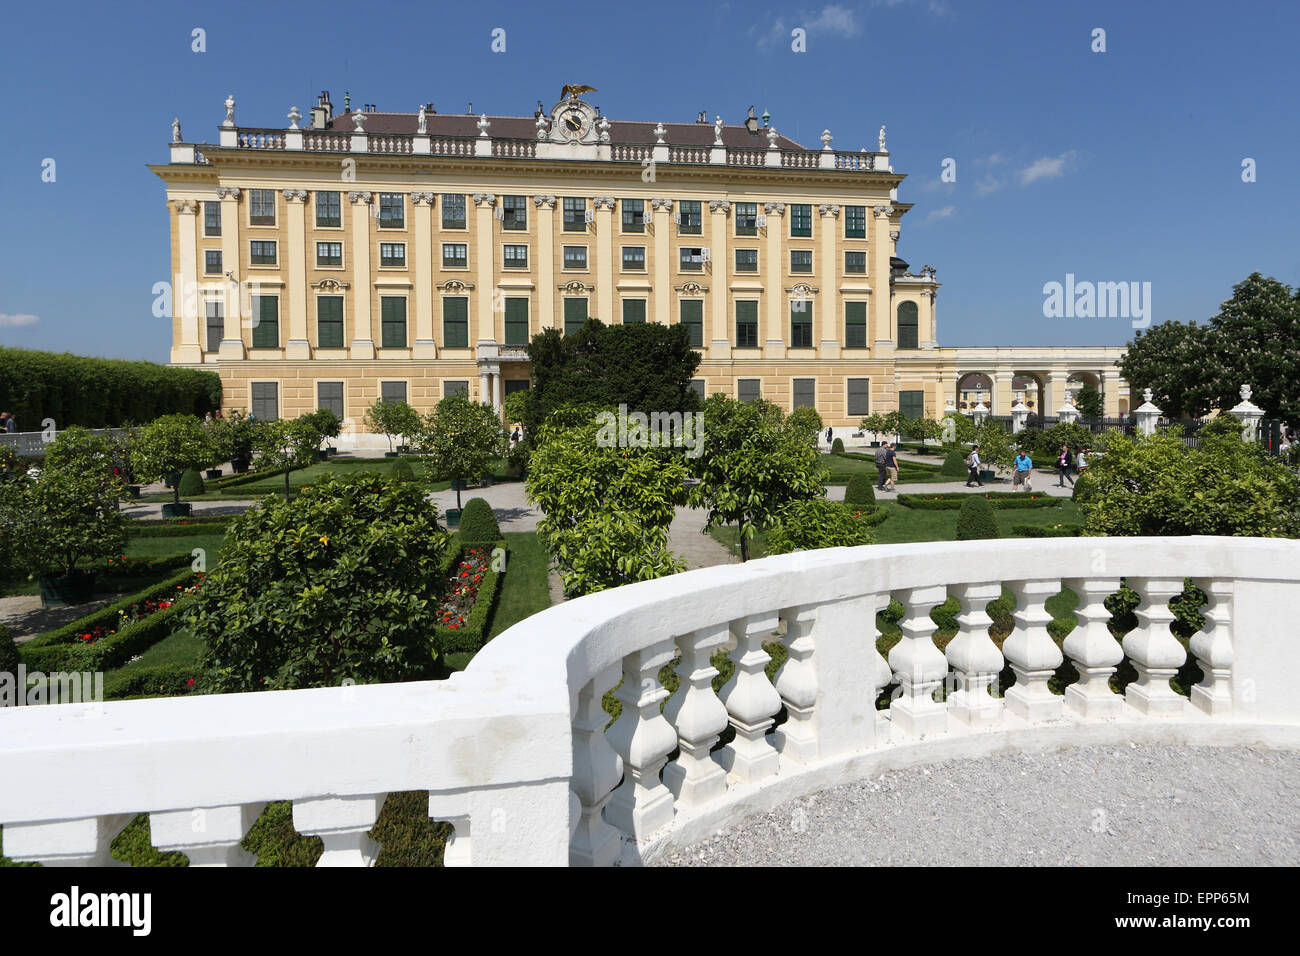 Schloss Schonbrunn palace and gardens, Vienna, Austria Stock Photo